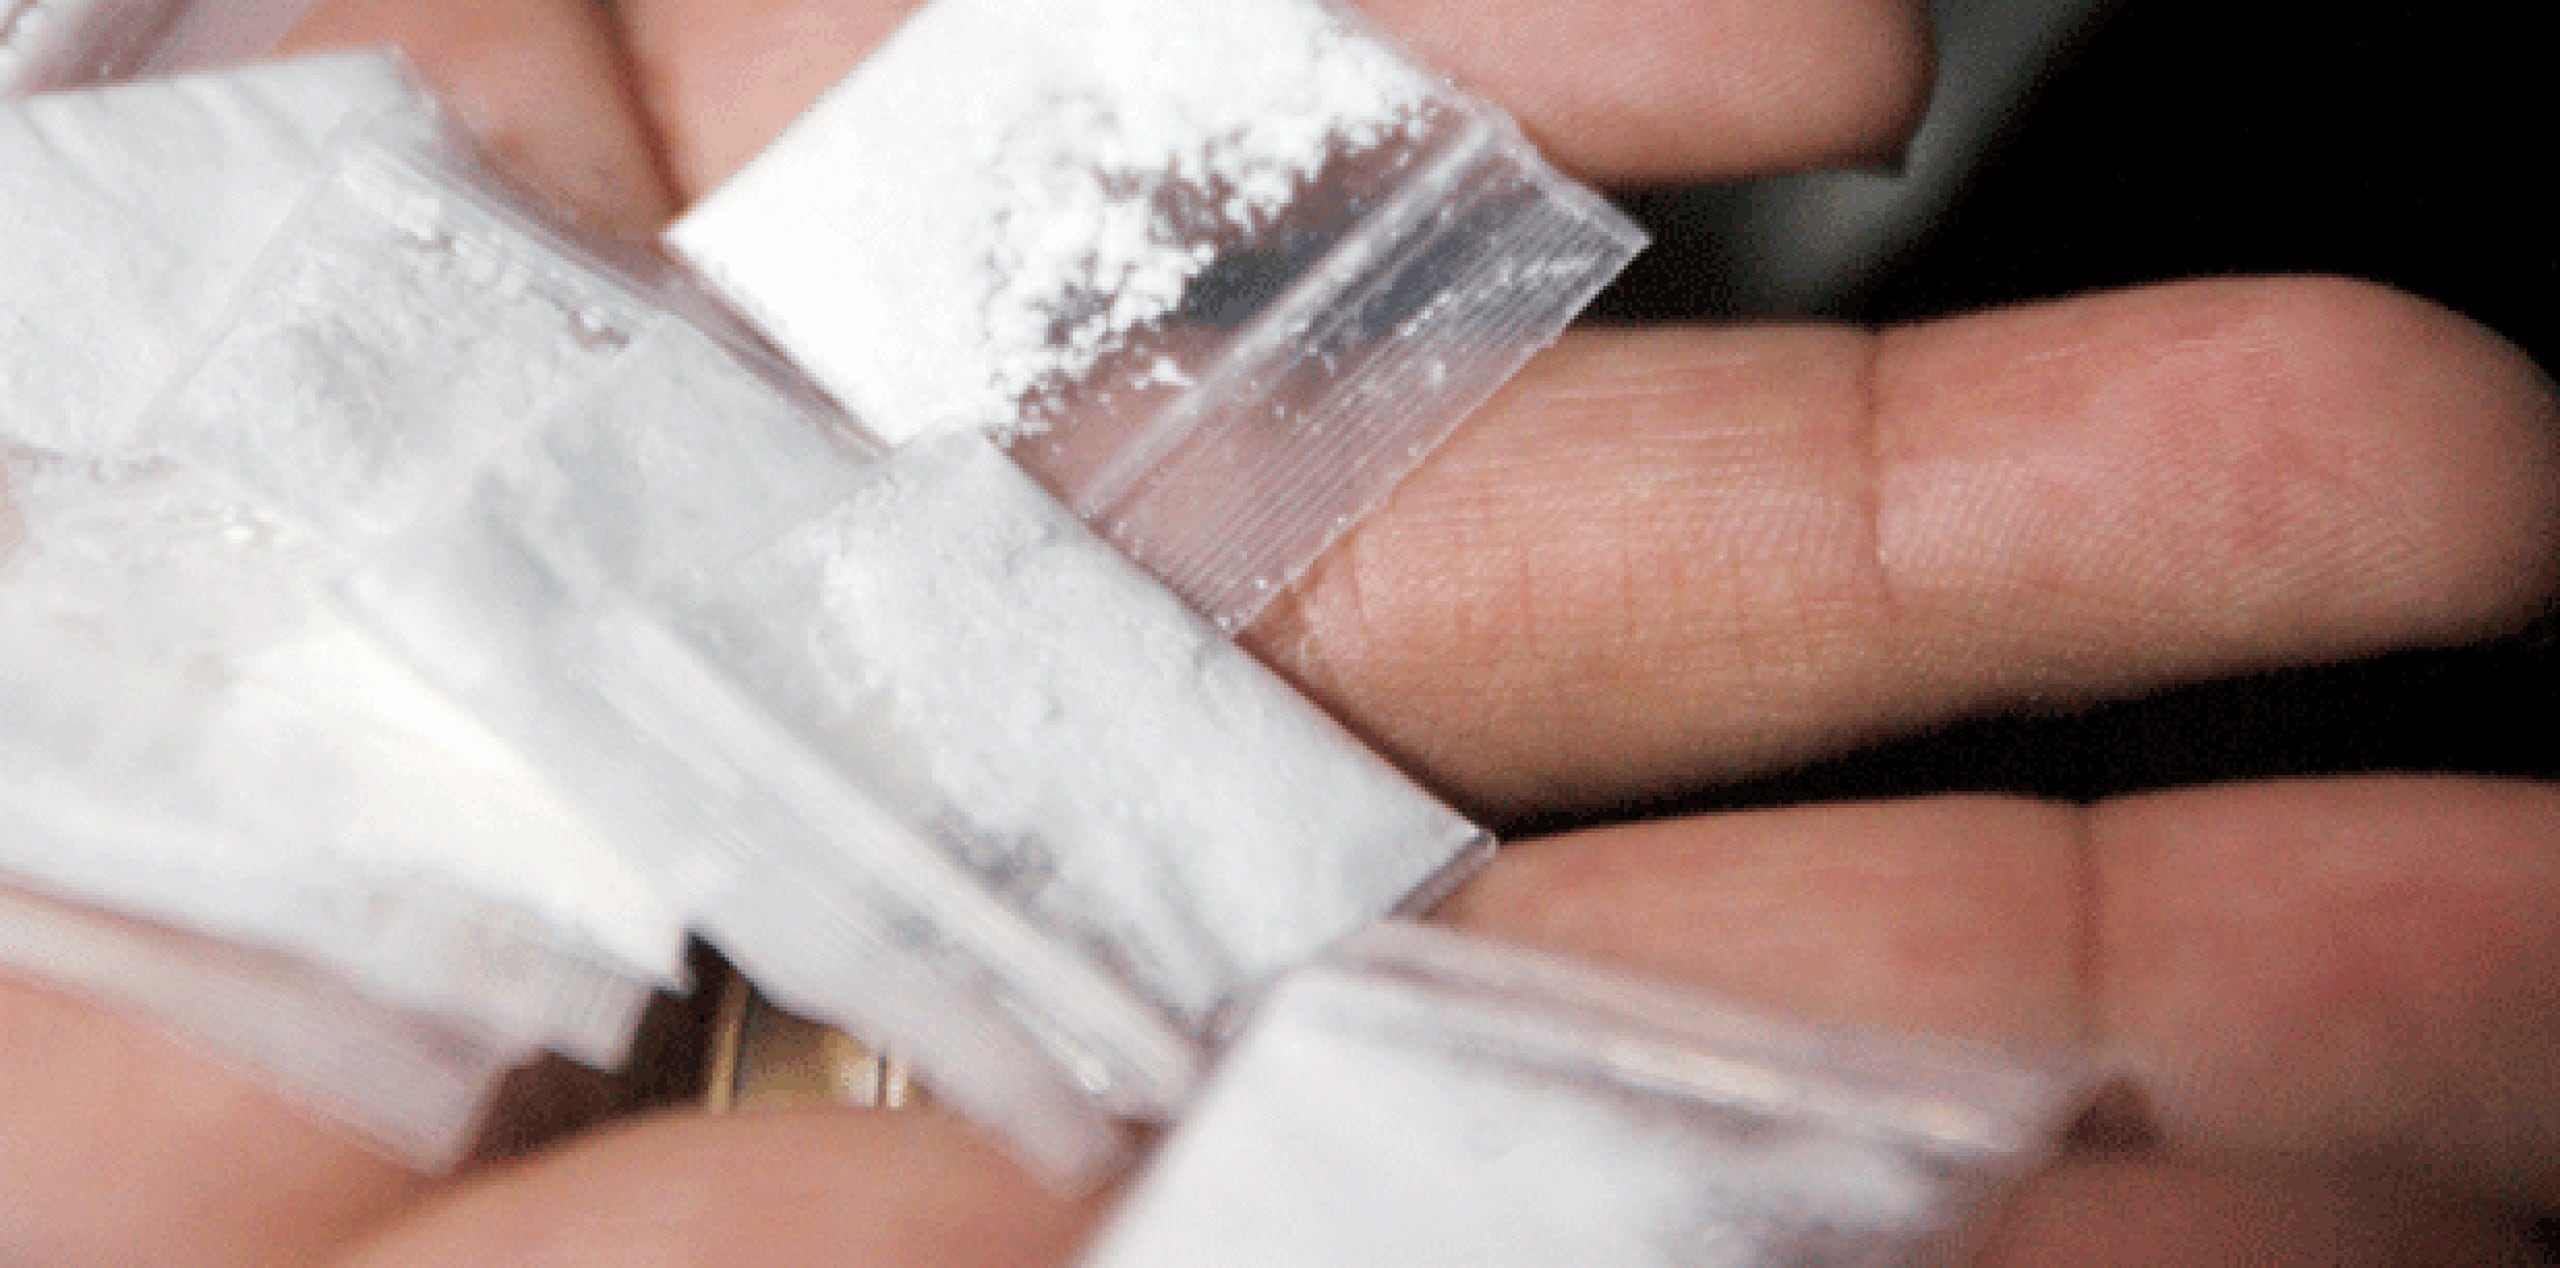 "La disponibilidad y la pureza de la heroína es cada vez mayor en Inglaterra y eso está teniendo un claro impacto", señaló la directora del departamento de Alcohol, Drogas y Tabaco del sistema público de salud inglés, Rosanna O'Connor. (Archivo)